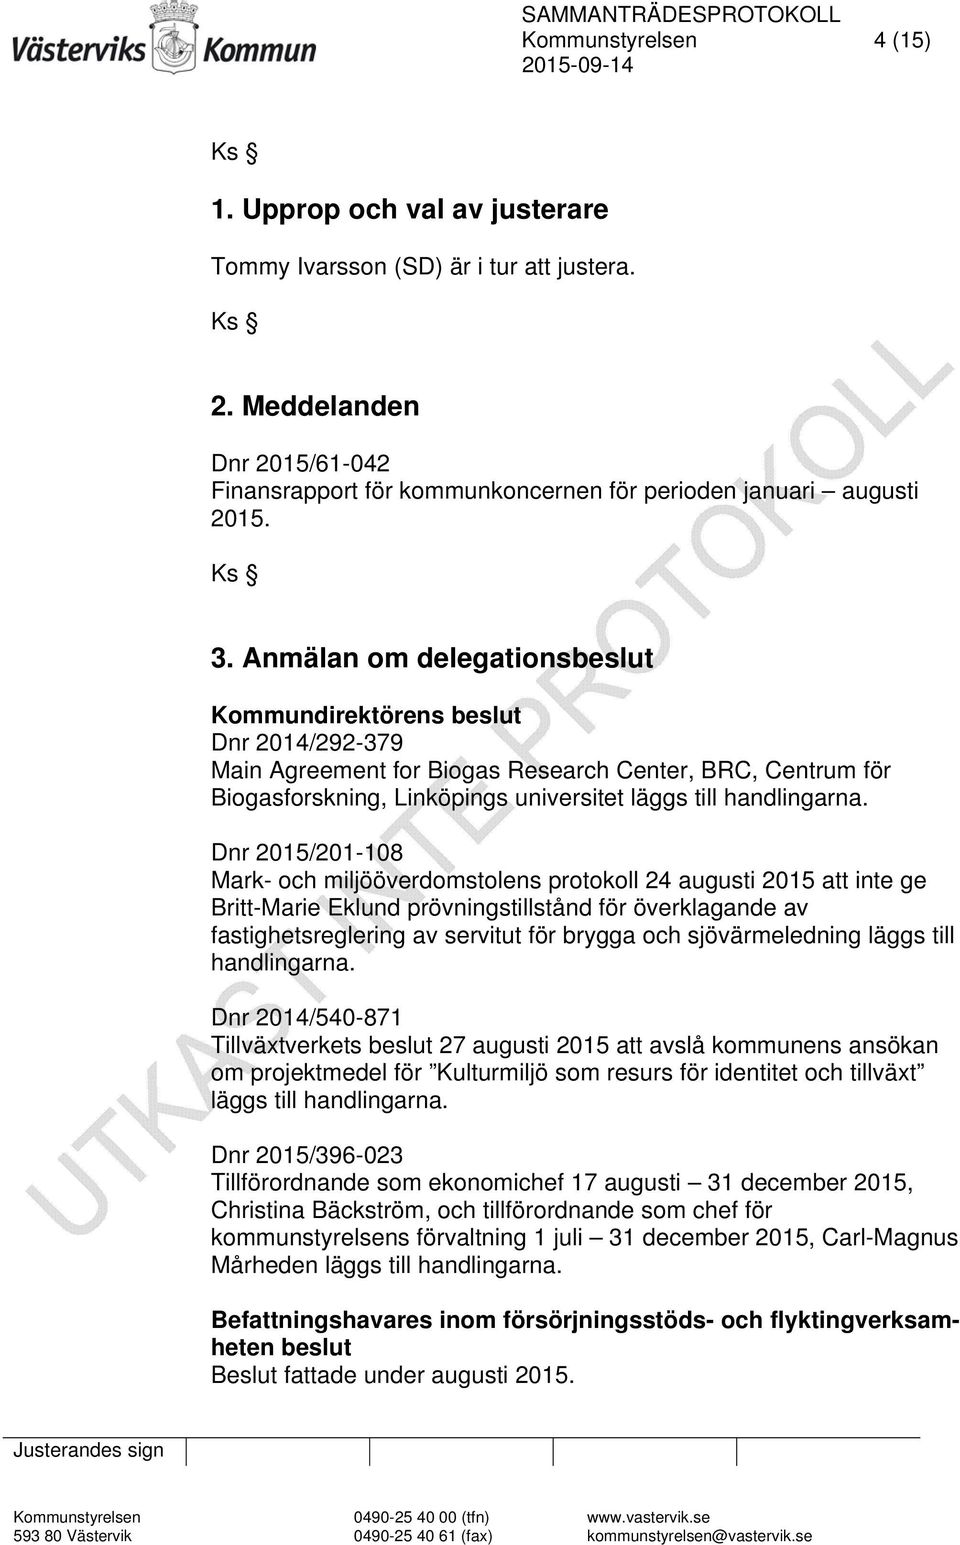 Dnr 2015/201-108 Mark- och miljööverdomstolens protokoll 24 augusti 2015 att inte ge Britt-Marie Eklund prövningstillstånd för överklagande av fastighetsreglering av servitut för brygga och